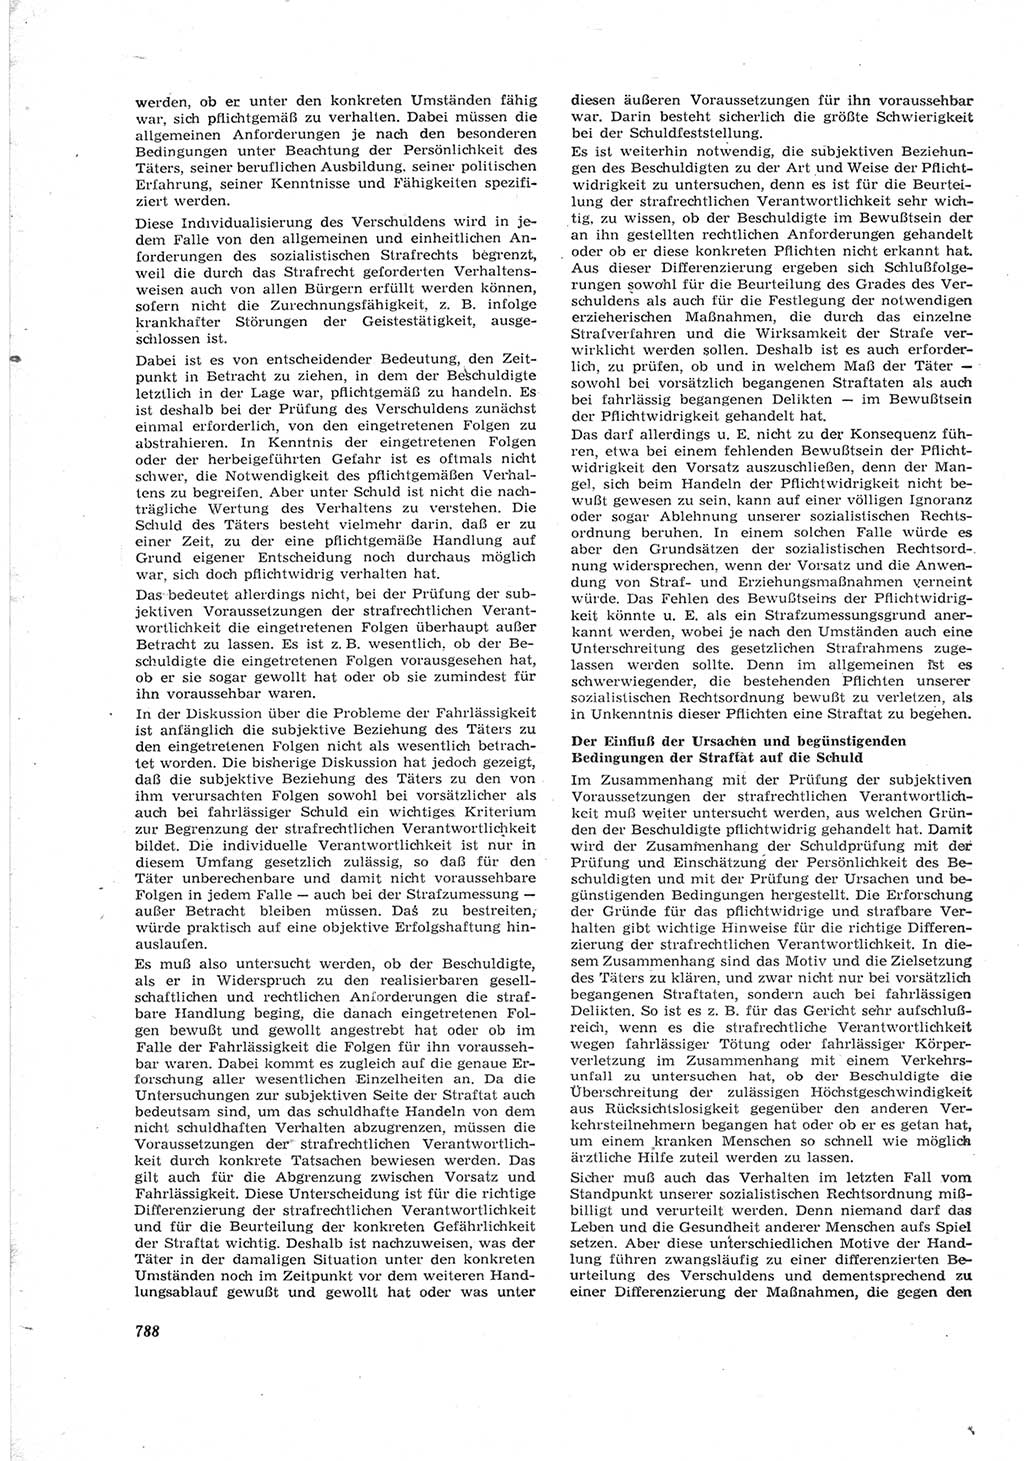 Neue Justiz (NJ), Zeitschrift für Recht und Rechtswissenschaft [Deutsche Demokratische Republik (DDR)], 17. Jahrgang 1963, Seite 788 (NJ DDR 1963, S. 788)